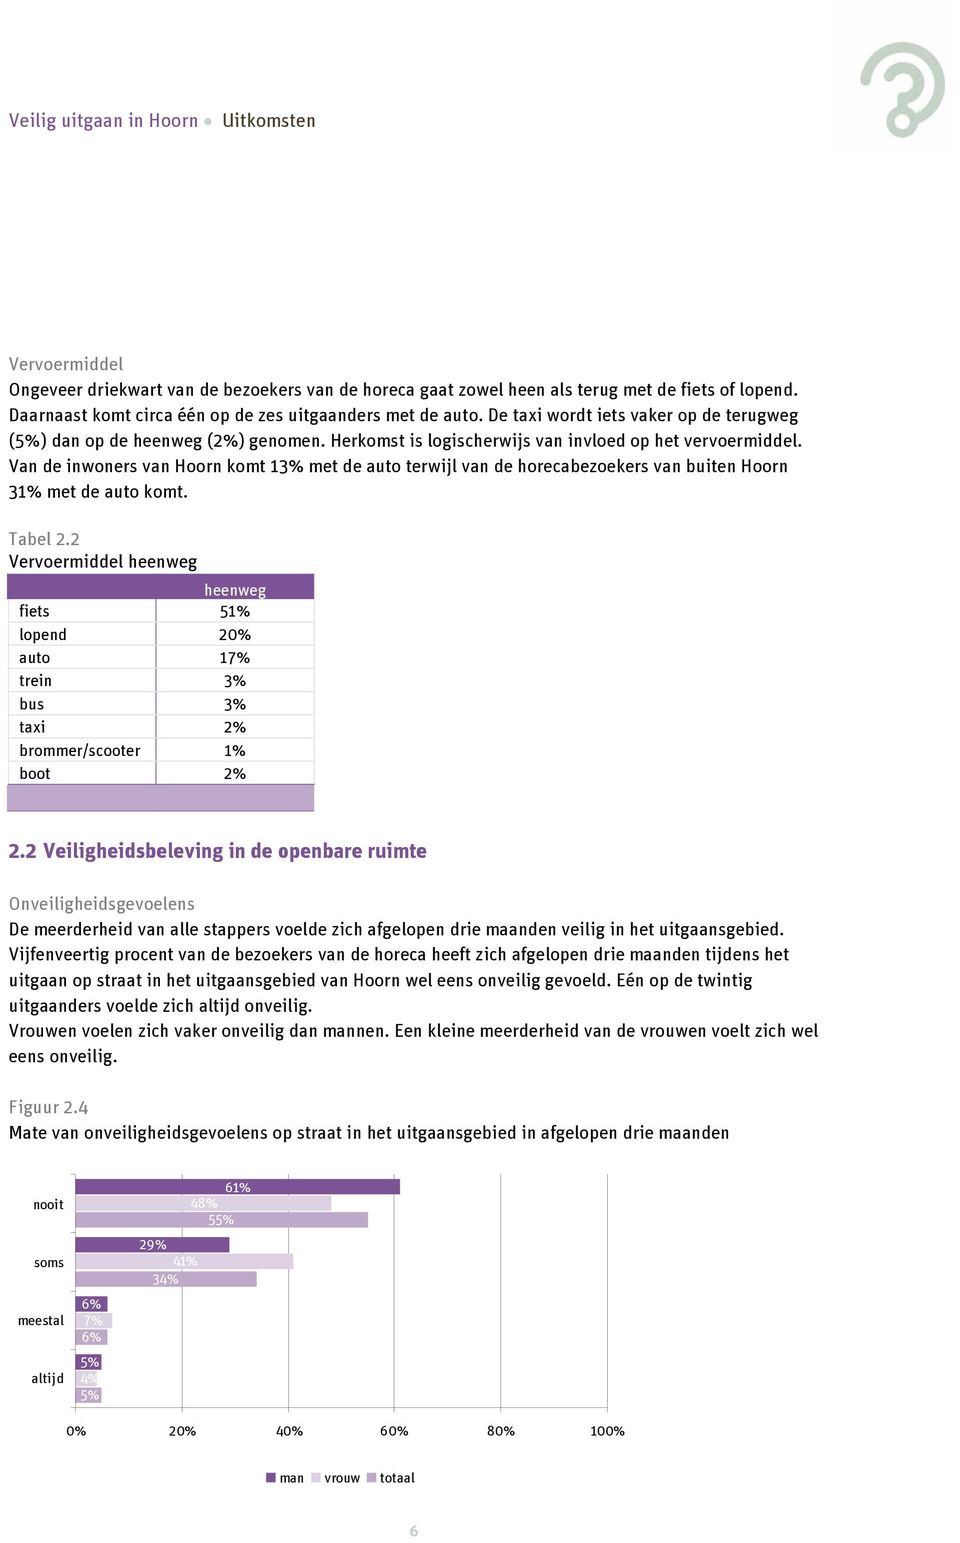 Van de inwoners van Hoorn komt 13% met de auto terwijl van de horecabezoekers van buiten Hoorn 31% met de auto komt. Tabel 2.